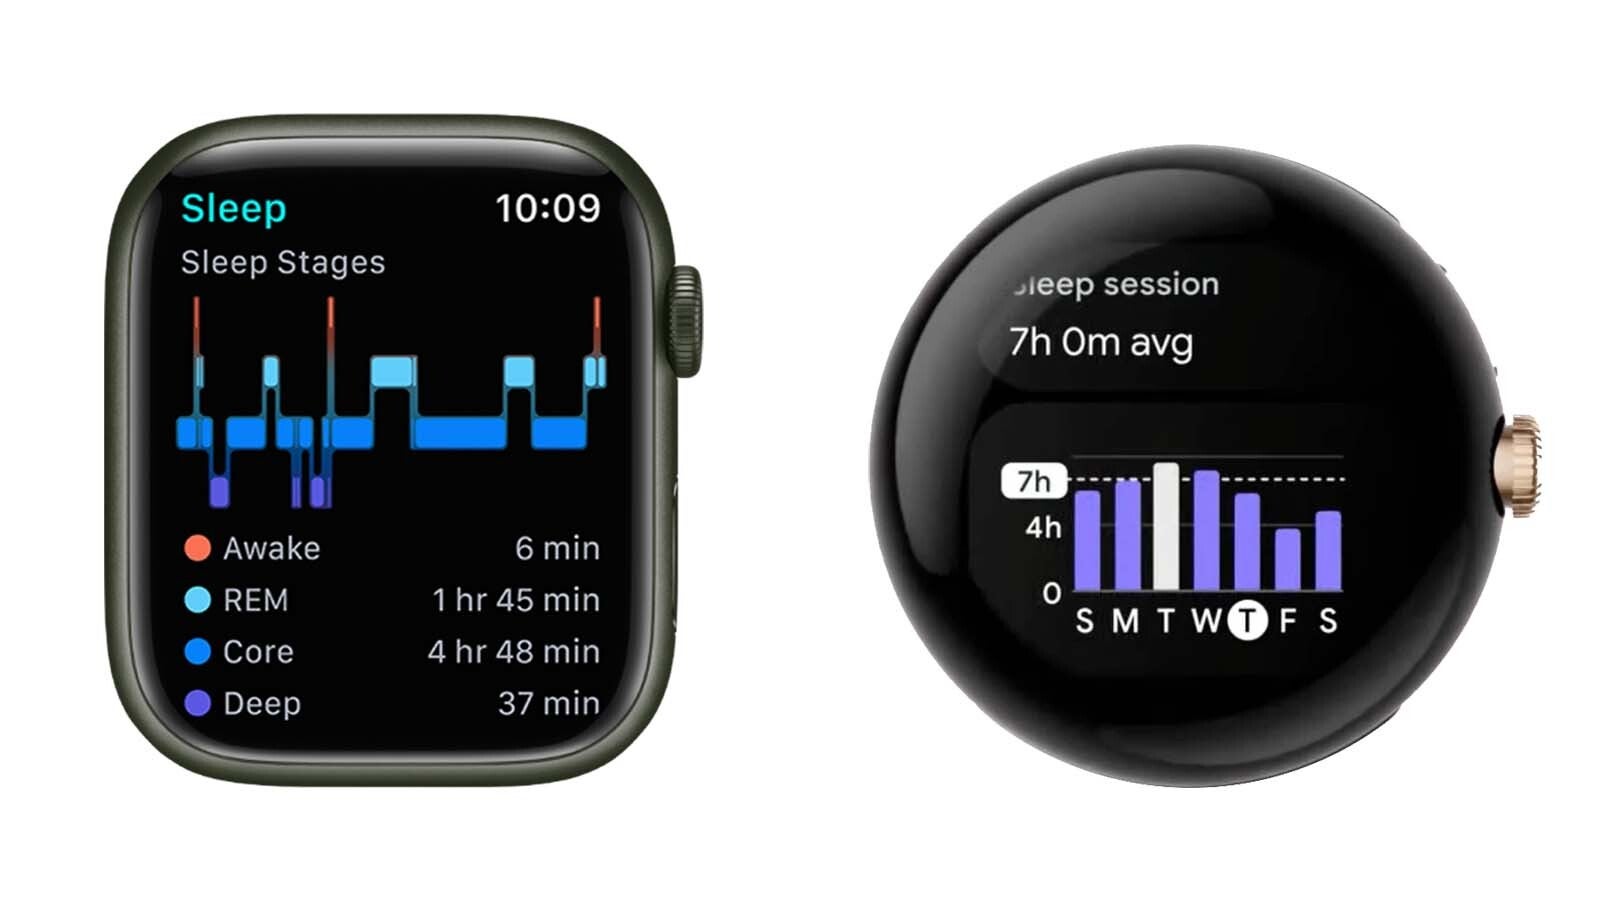 Comparación de la interfaz de Apple Watch vs Pixel Watch: ¿los relojes inteligentes redondos son terriblemente poco prácticos?  Porque el Apple Watch rectangular tiene mucho más sentido